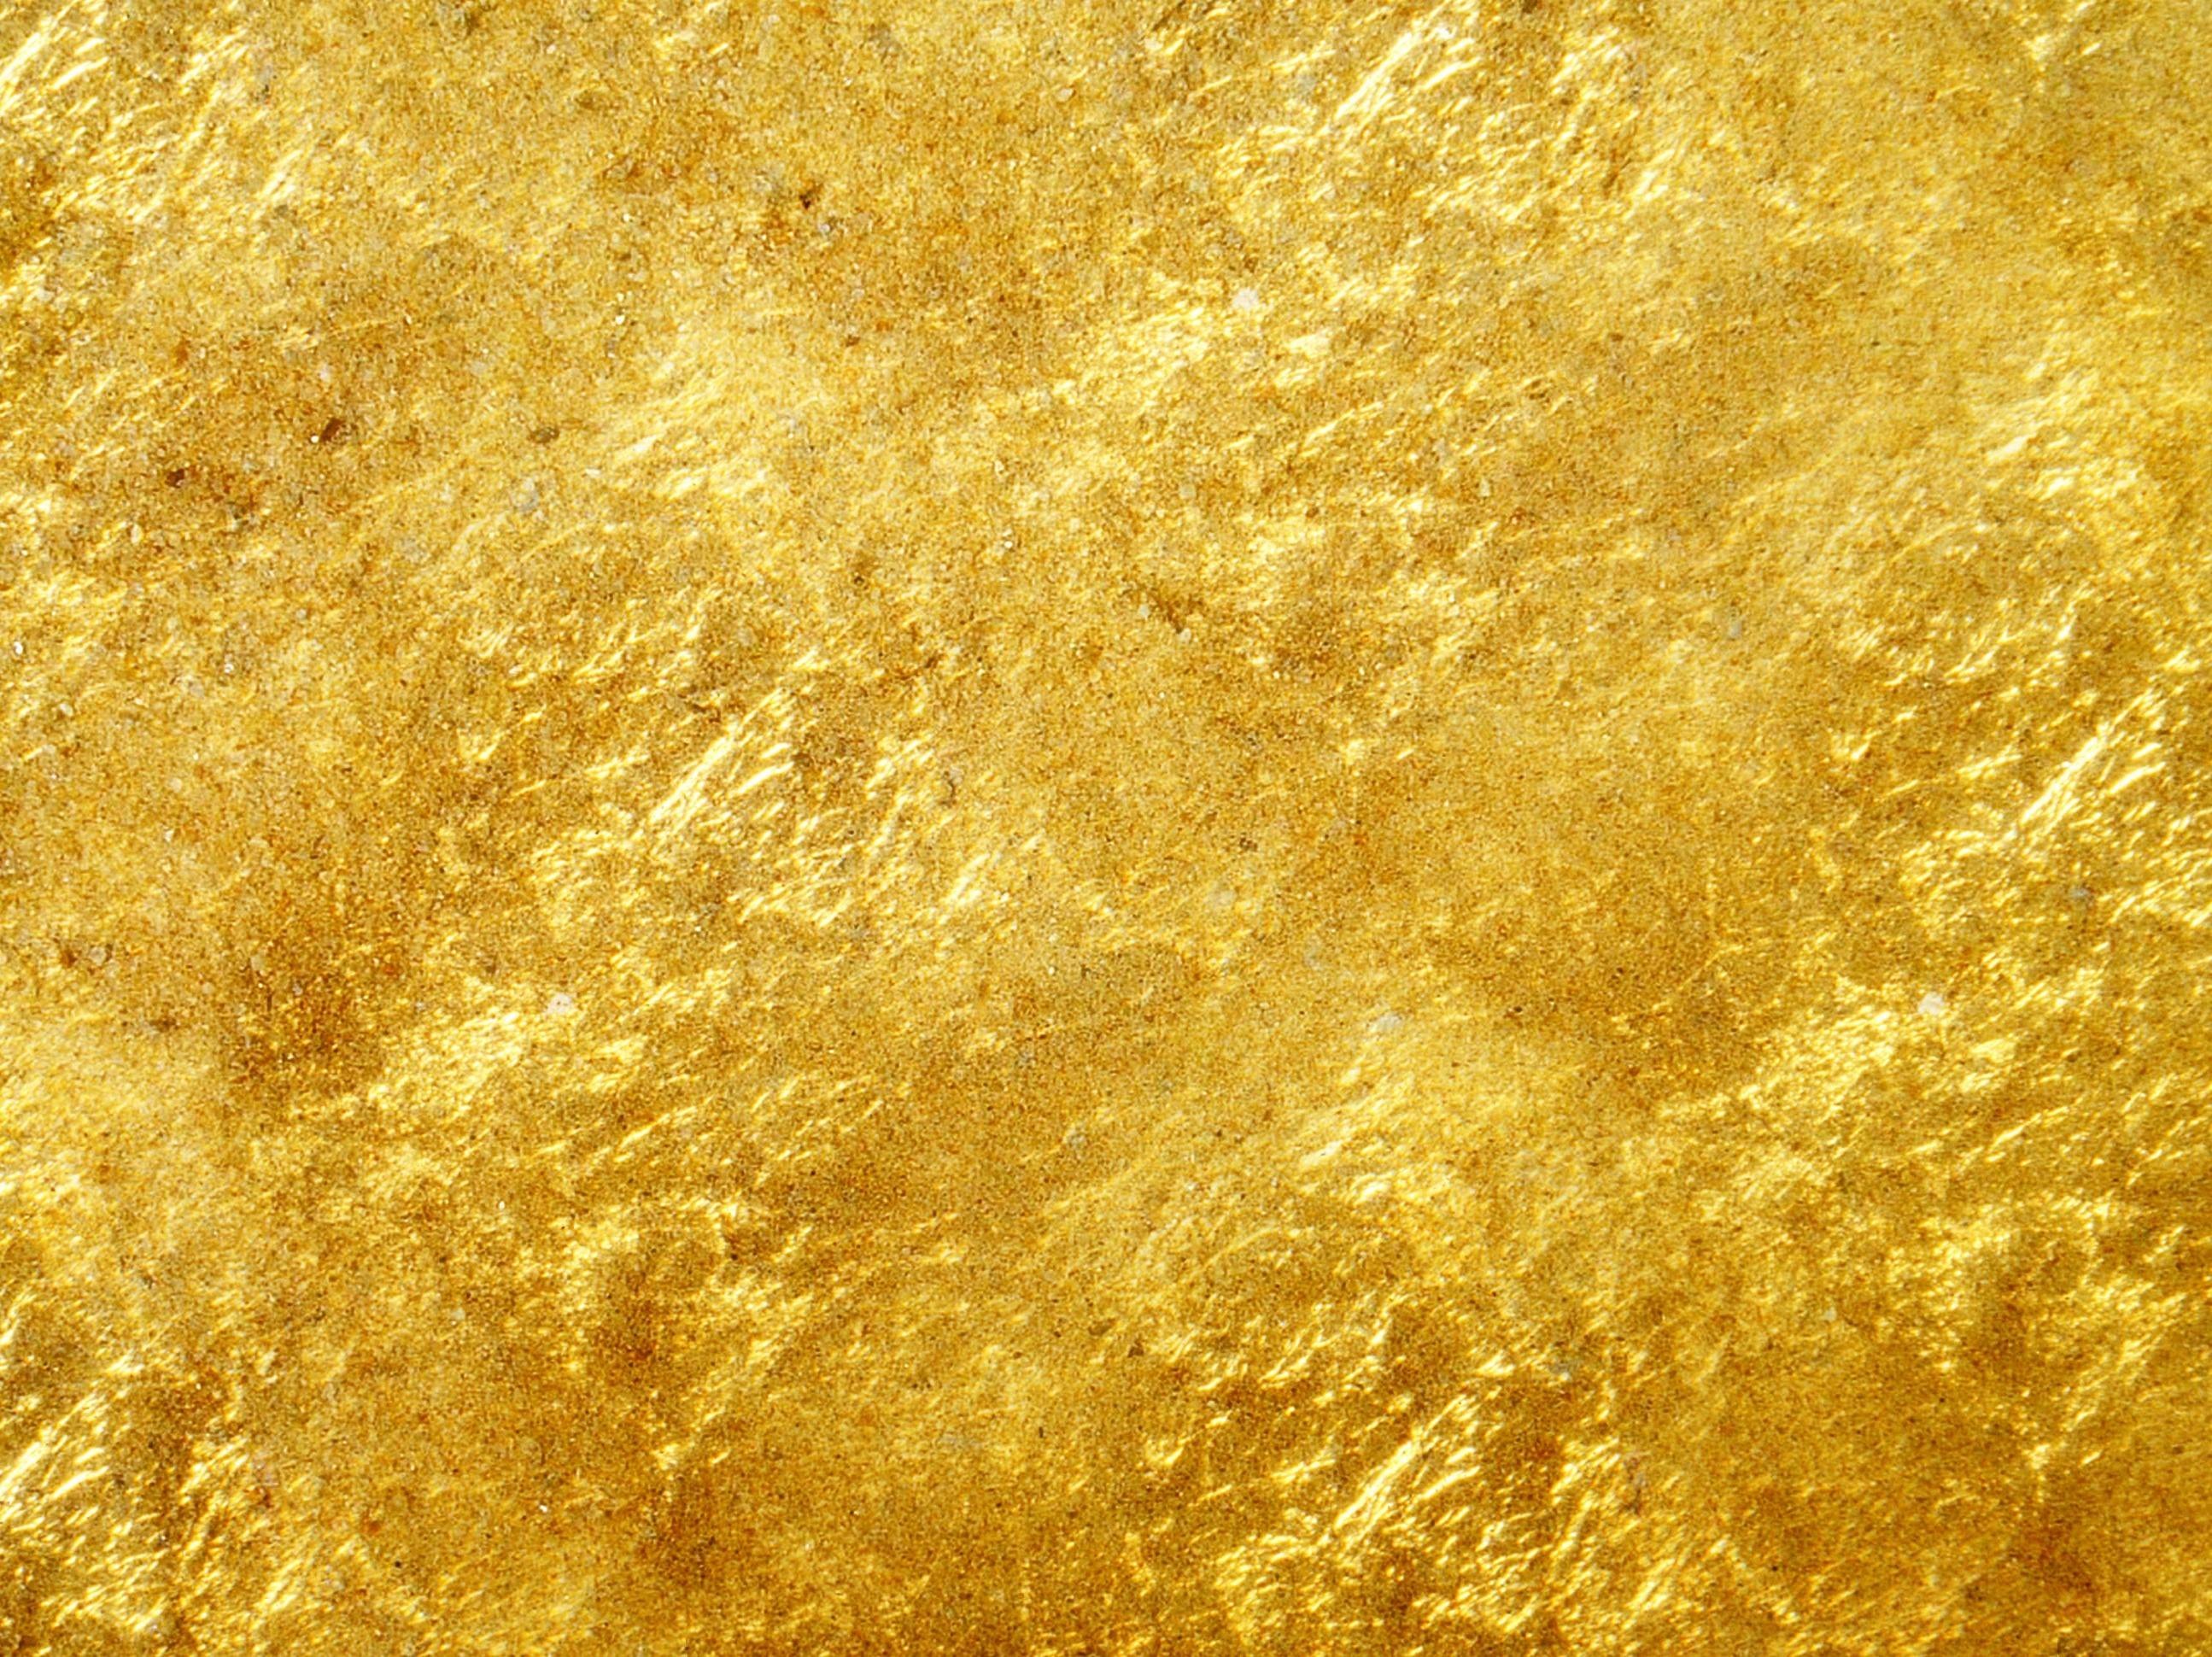 Nền vàng: Thông qua hình ảnh nền vàng, bạn sẽ cảm nhận được sự sang trọng và giàu có màu vàng mang lại. Hãy khám phá những ý tưởng thiết kế độc đáo với sắc vàng tươi sáng và chất liệu kim loại quý cho không gian sống của mình.